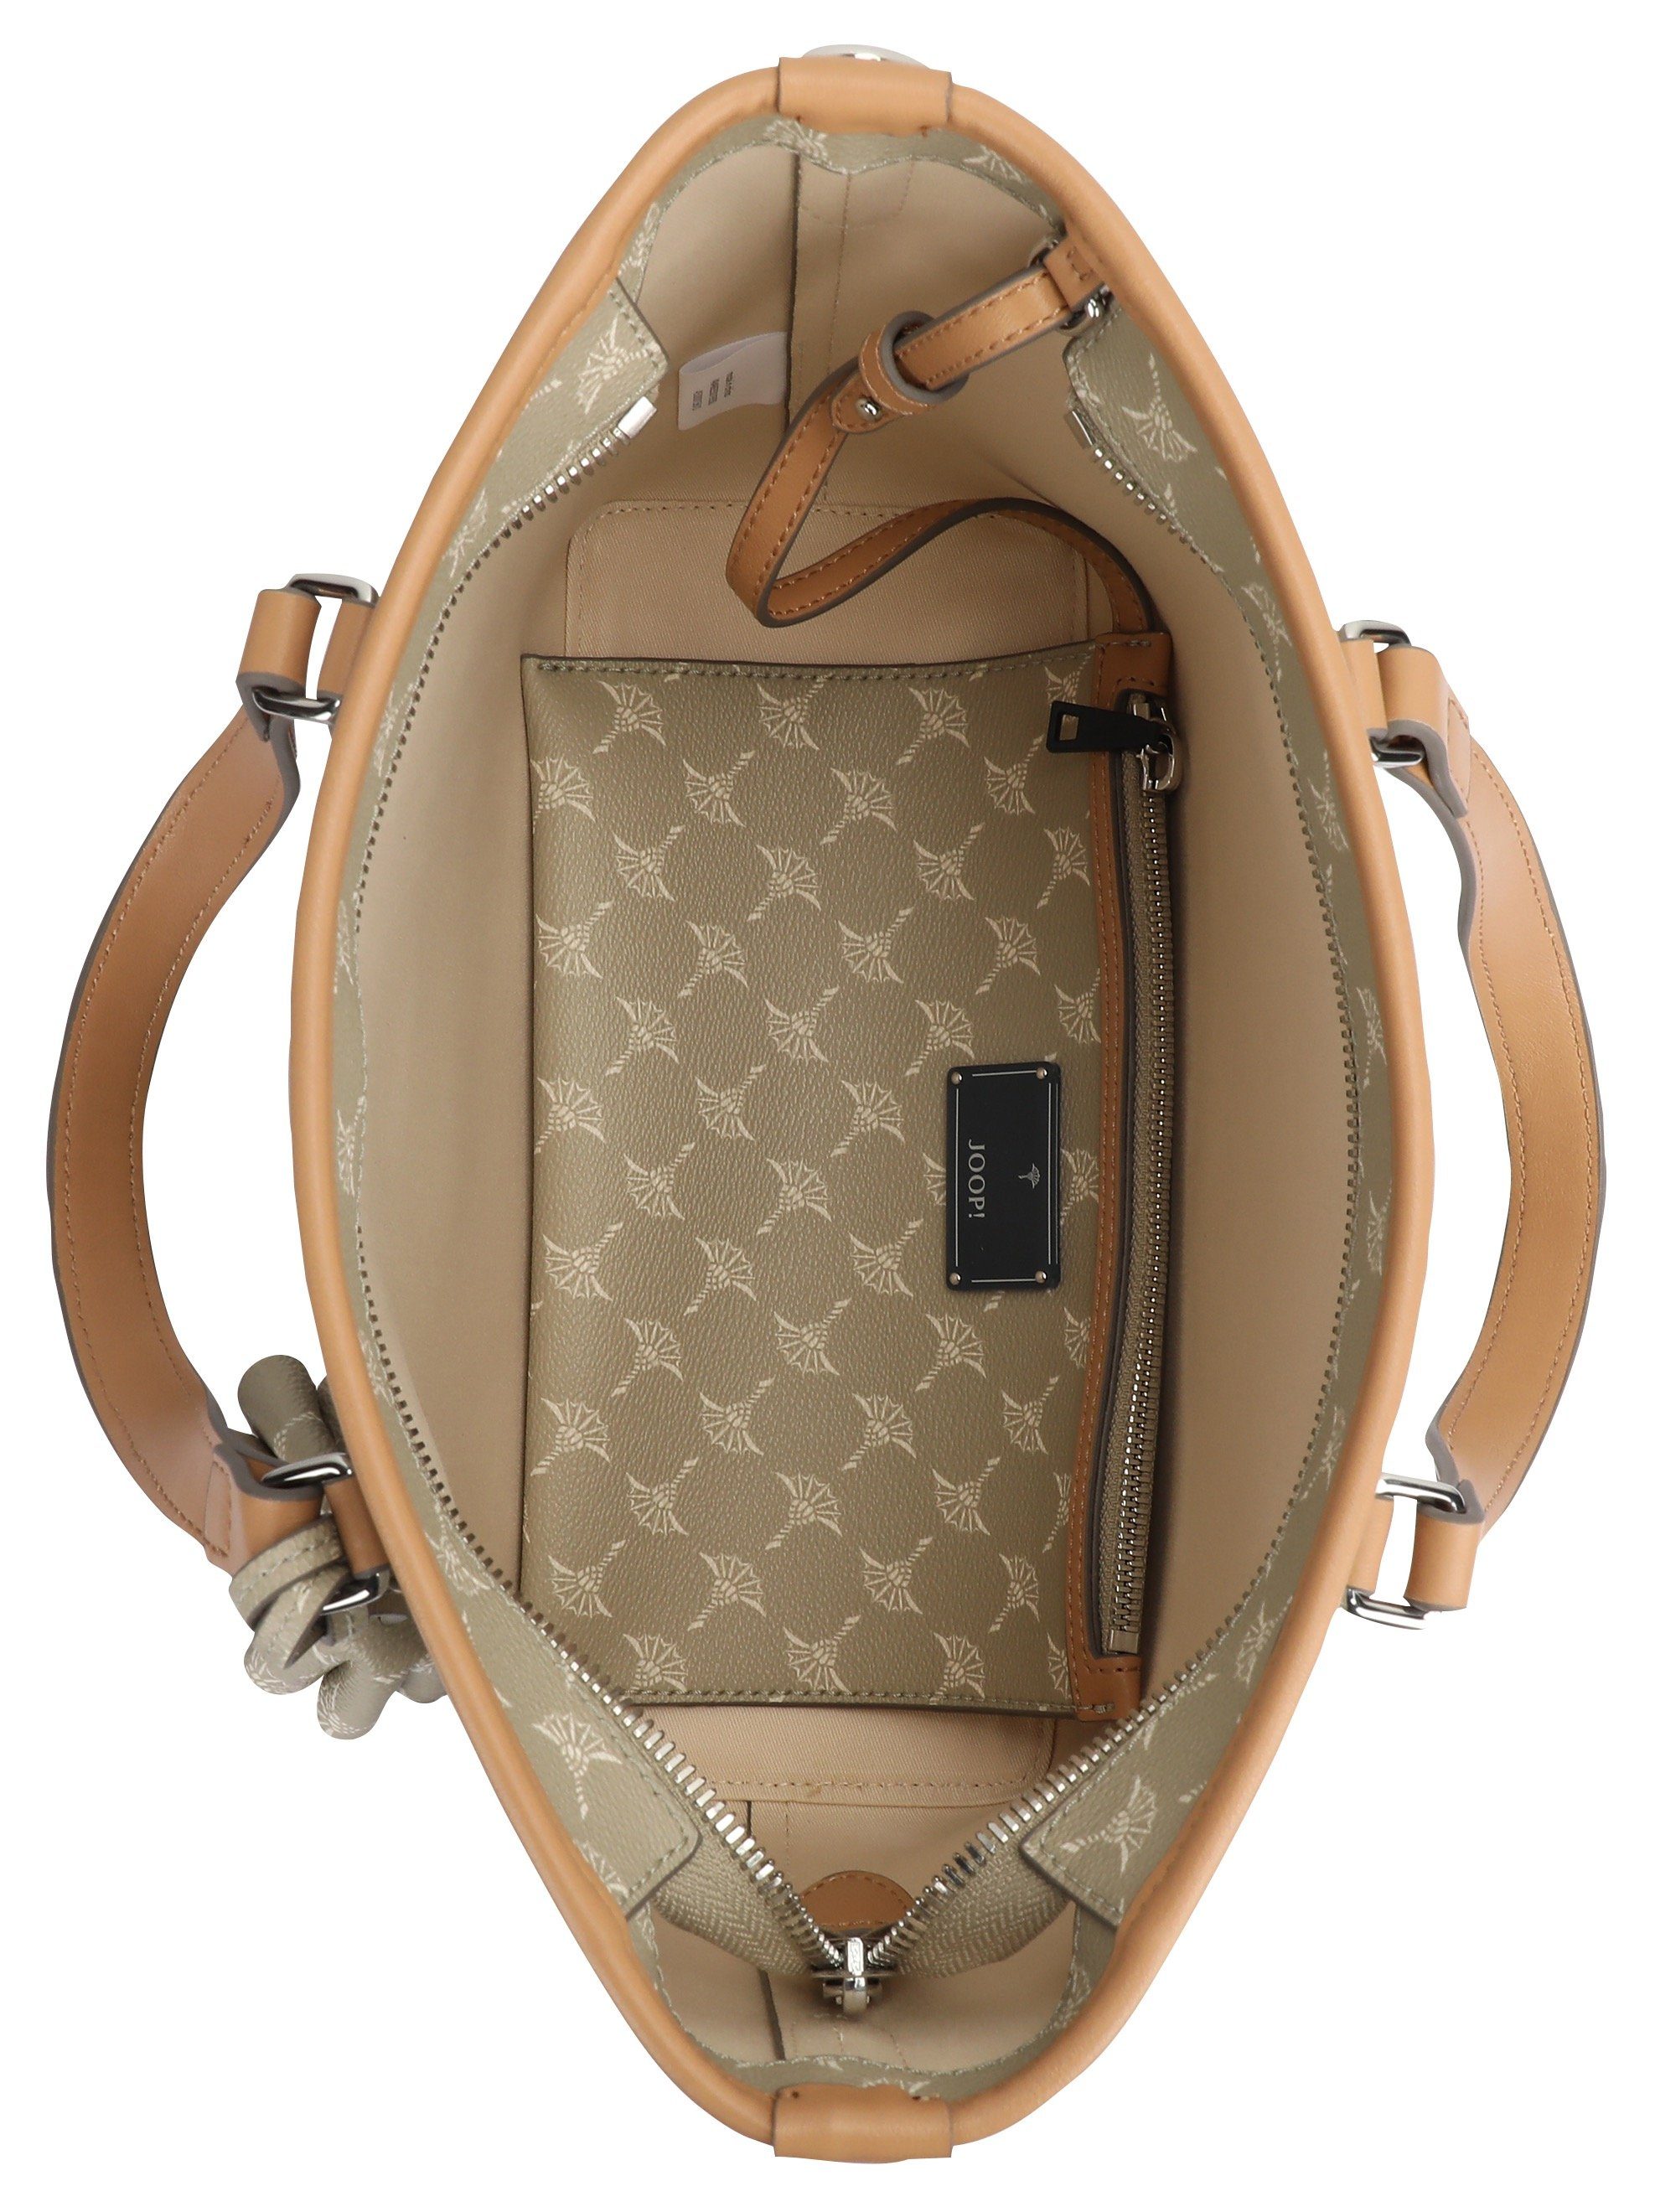 Damen Handtaschen Joop  Henkeltasche cortina 1.0 ketty handbag shz, mit kleiner, herausnehmbarerer Reißverschlusstasche